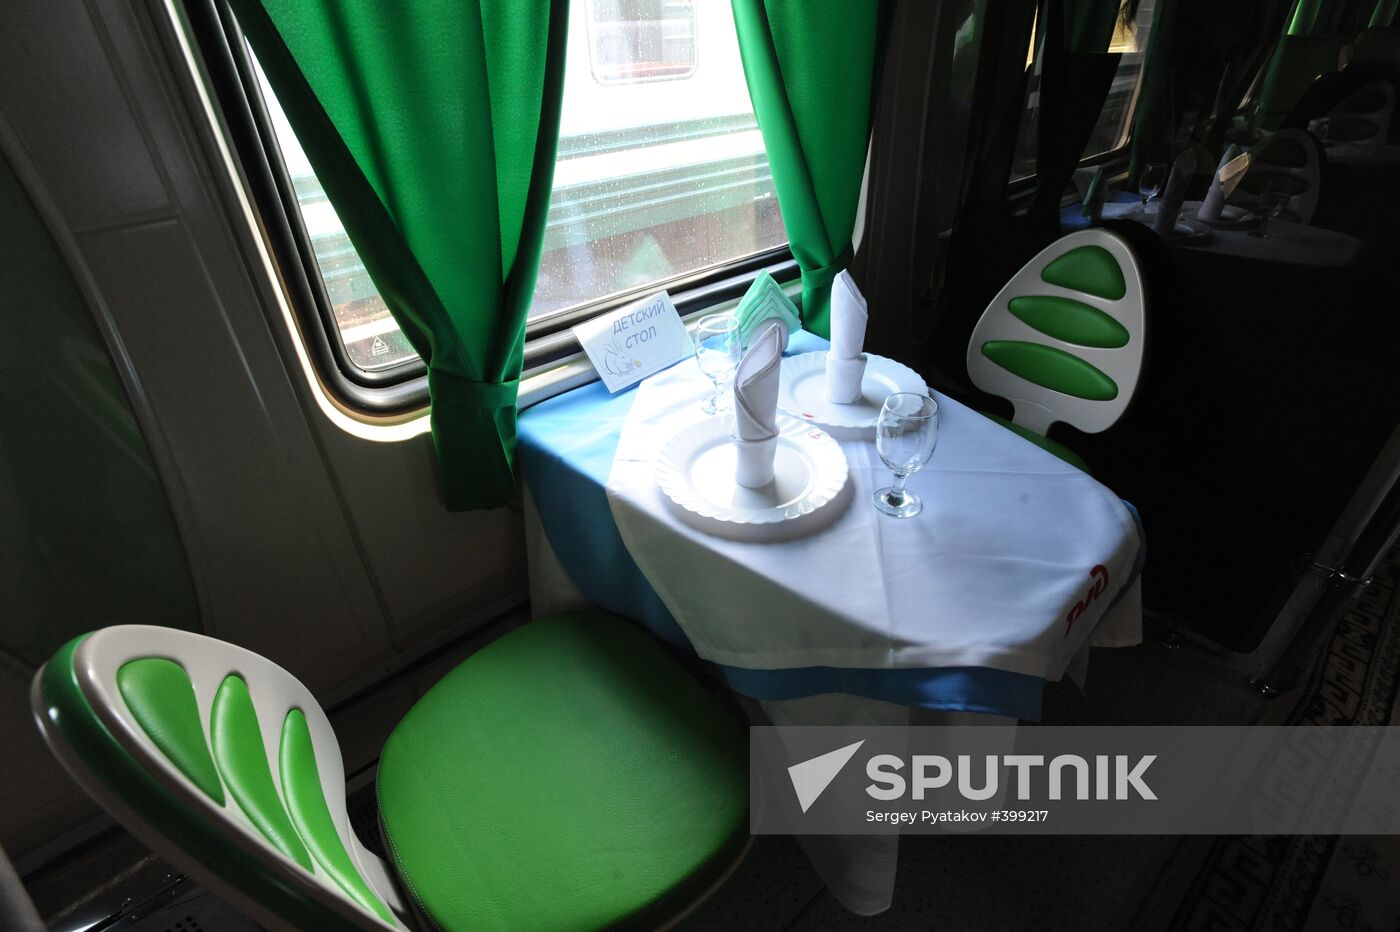 The new Premium class luxury passenger train